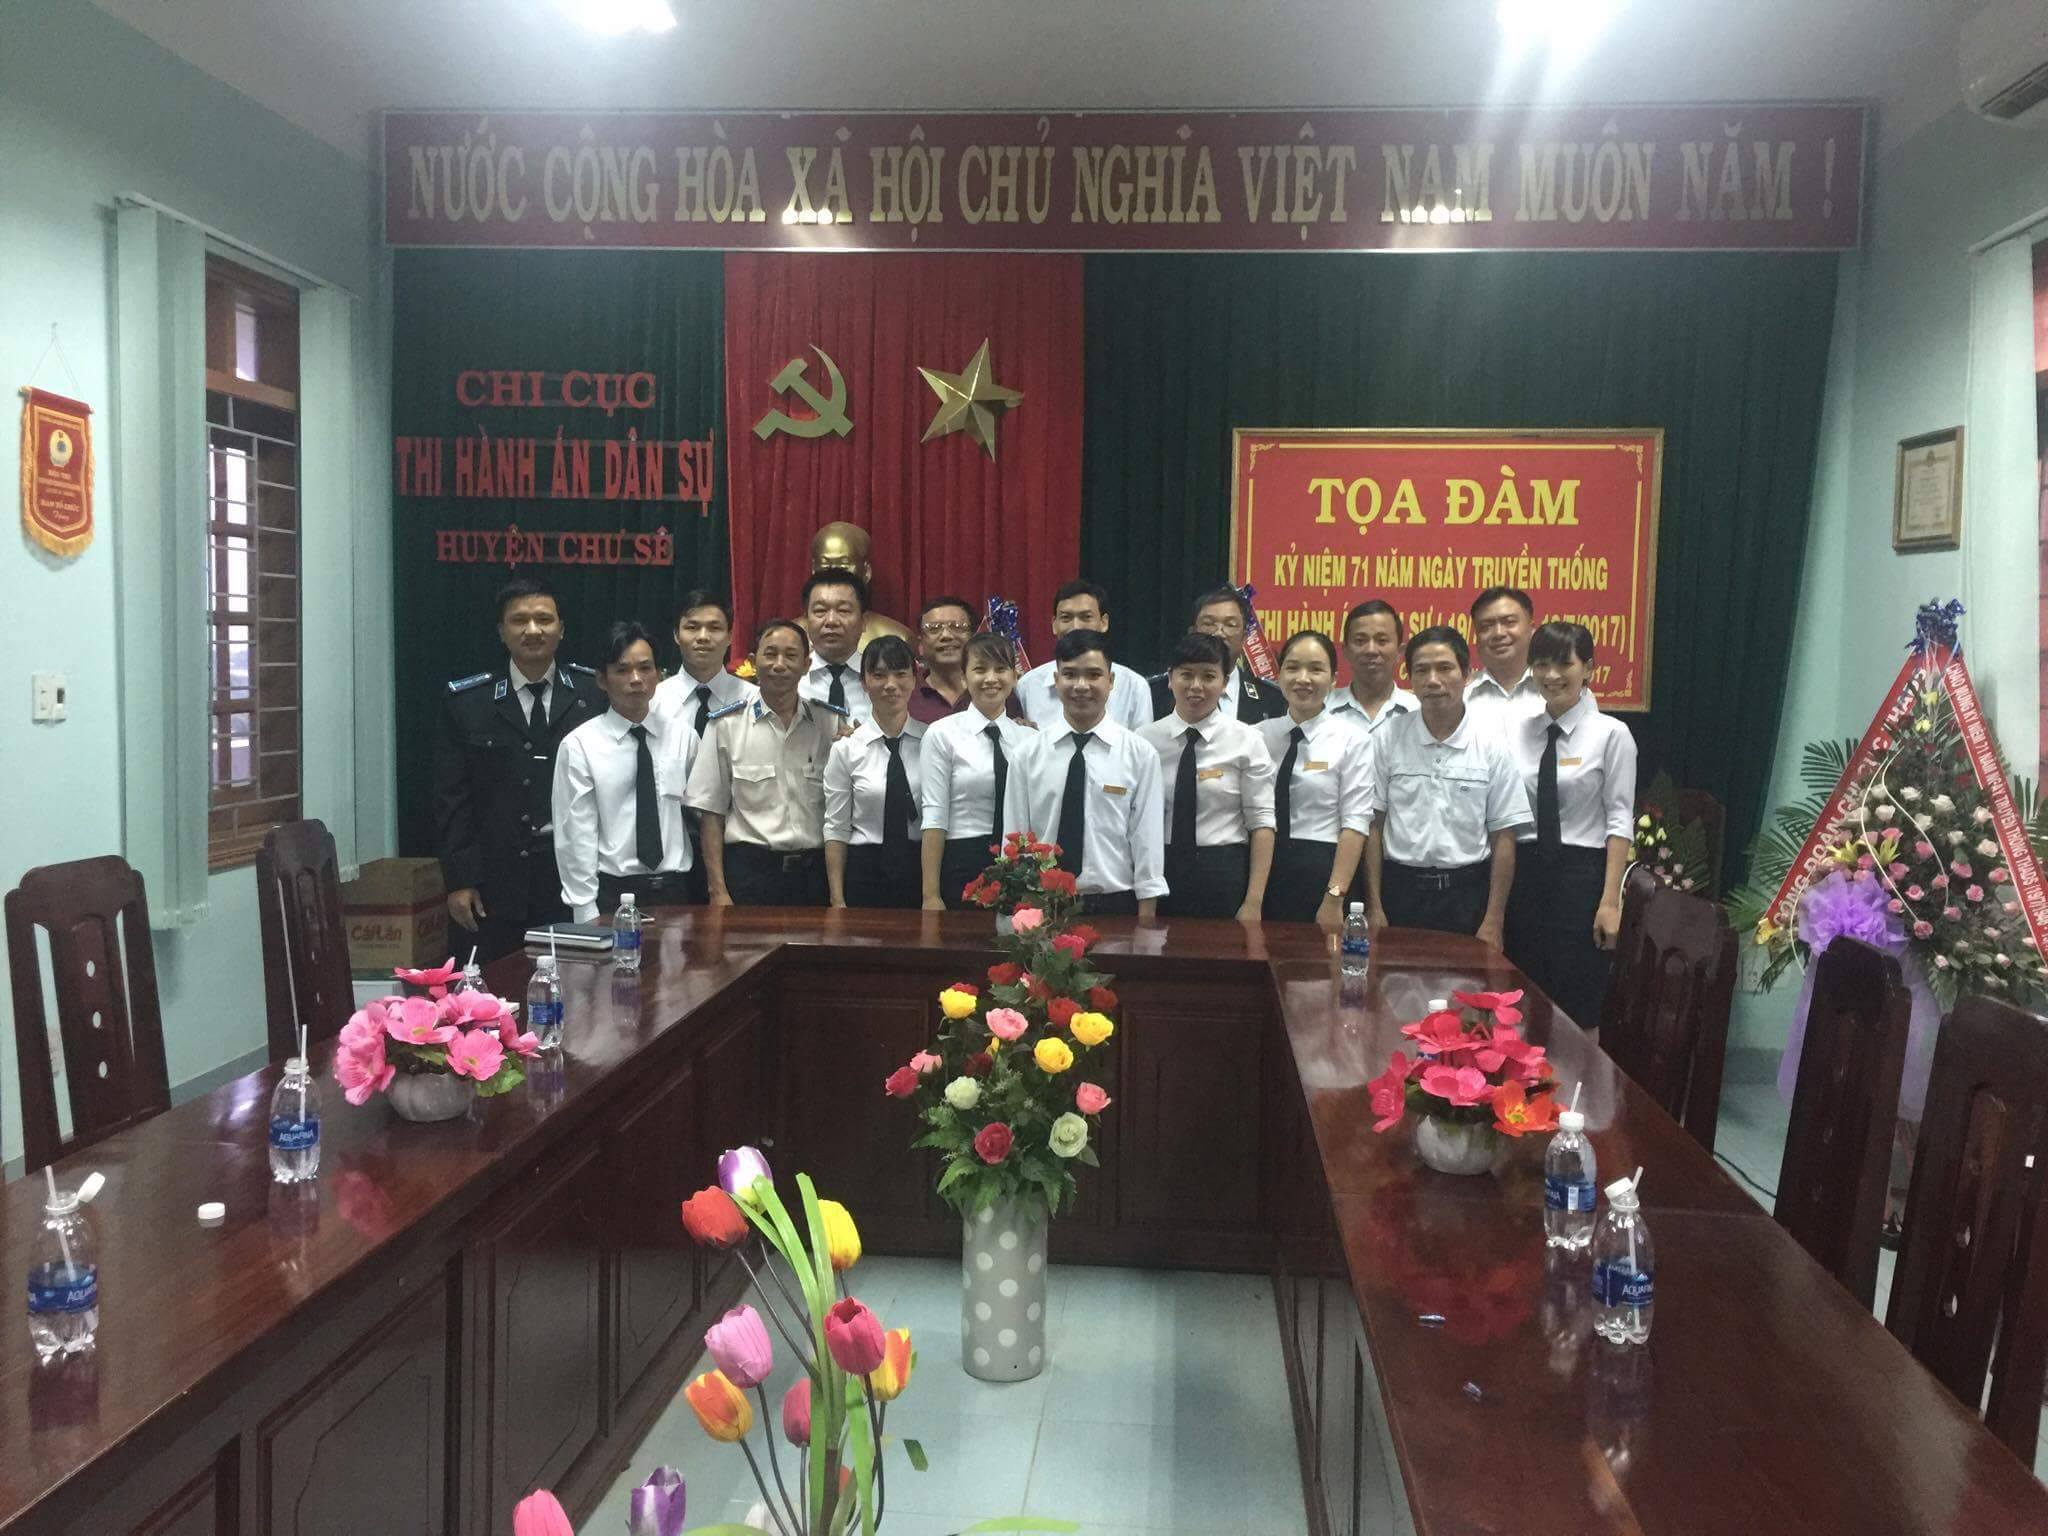 Chi cục Thi hành án dân sự huyện Chư Sê tổ chức Tọa đàm 71 năm Ngày Truyền thống Thi hành án dân sự